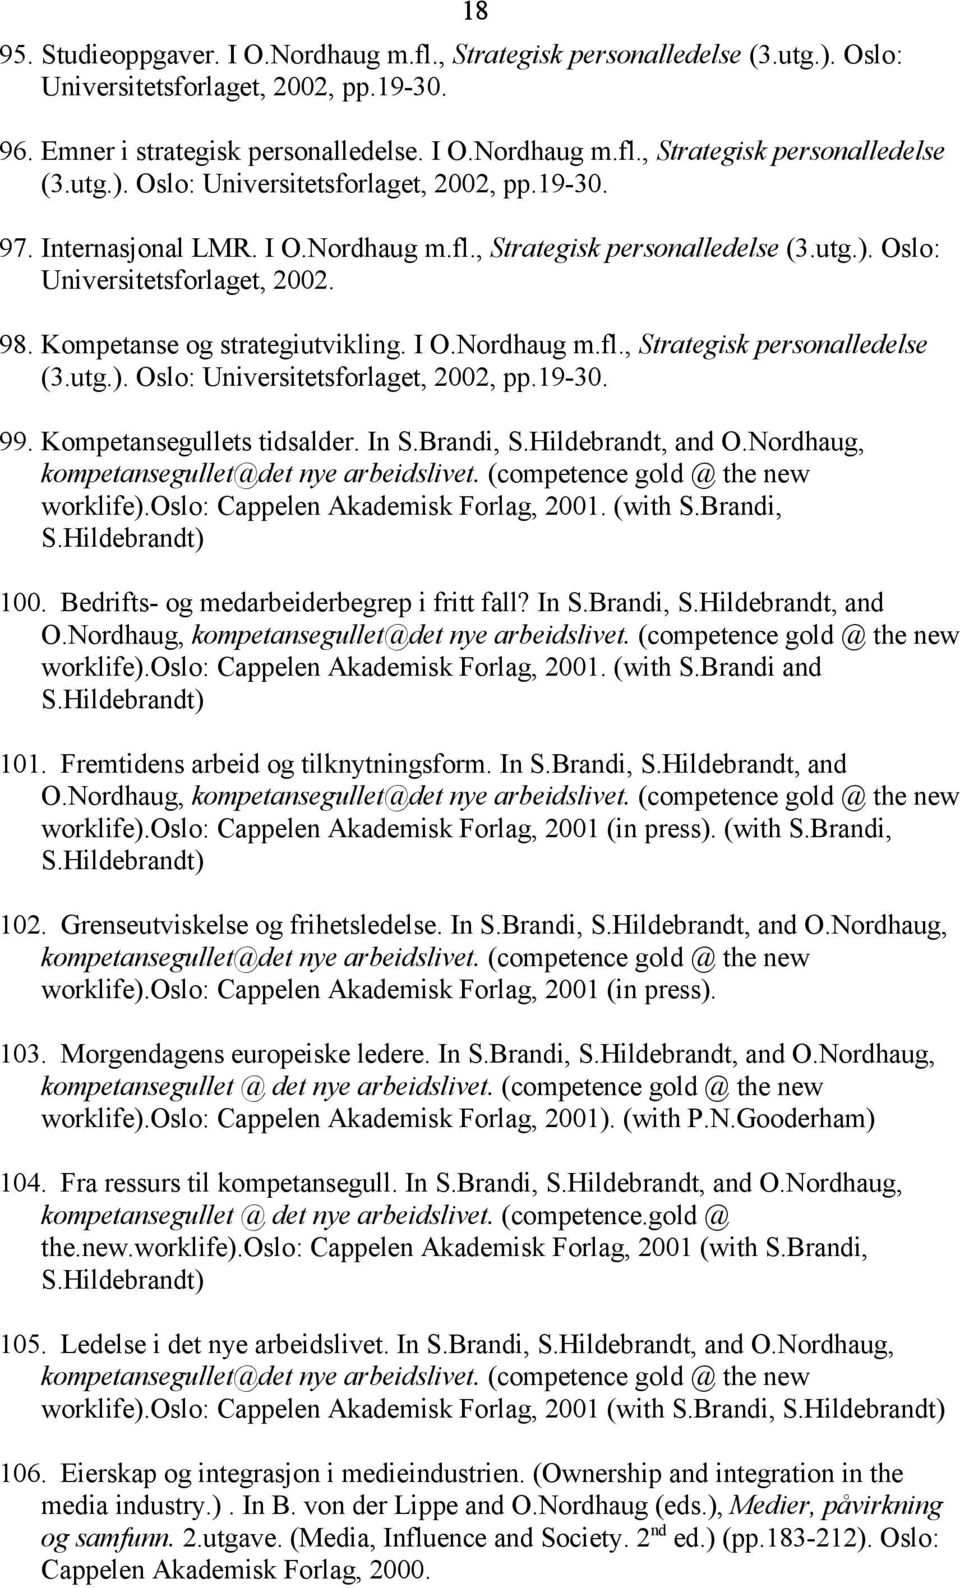 19-30. 99. Kompetansegullets tidsalder. In S.Brandi, S.Hildebrandt, and O.Nordhaug, kompetansegullet@det nye arbeidslivet. (competence gold @ the new worklife).oslo: Cappelen Akademisk Forlag, 2001.